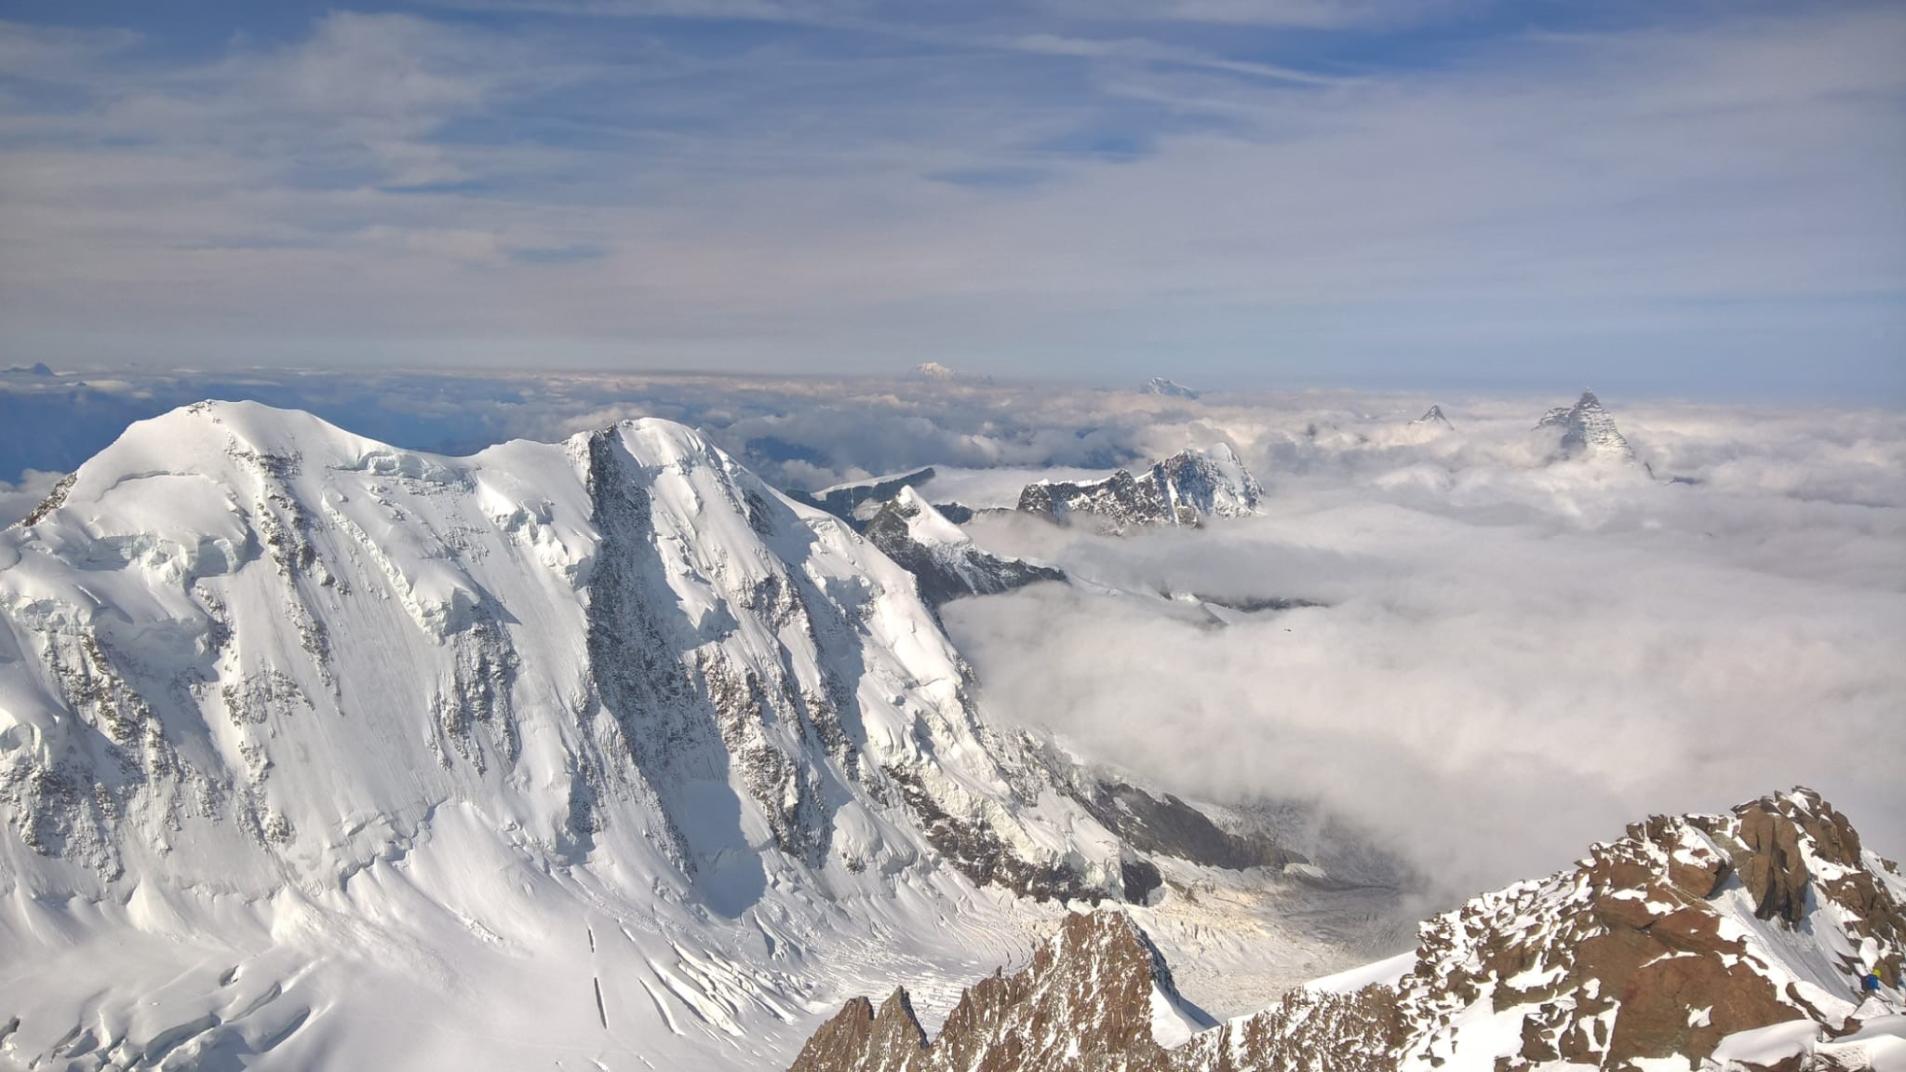 The peak of Monte Rosa: Dufour Summit